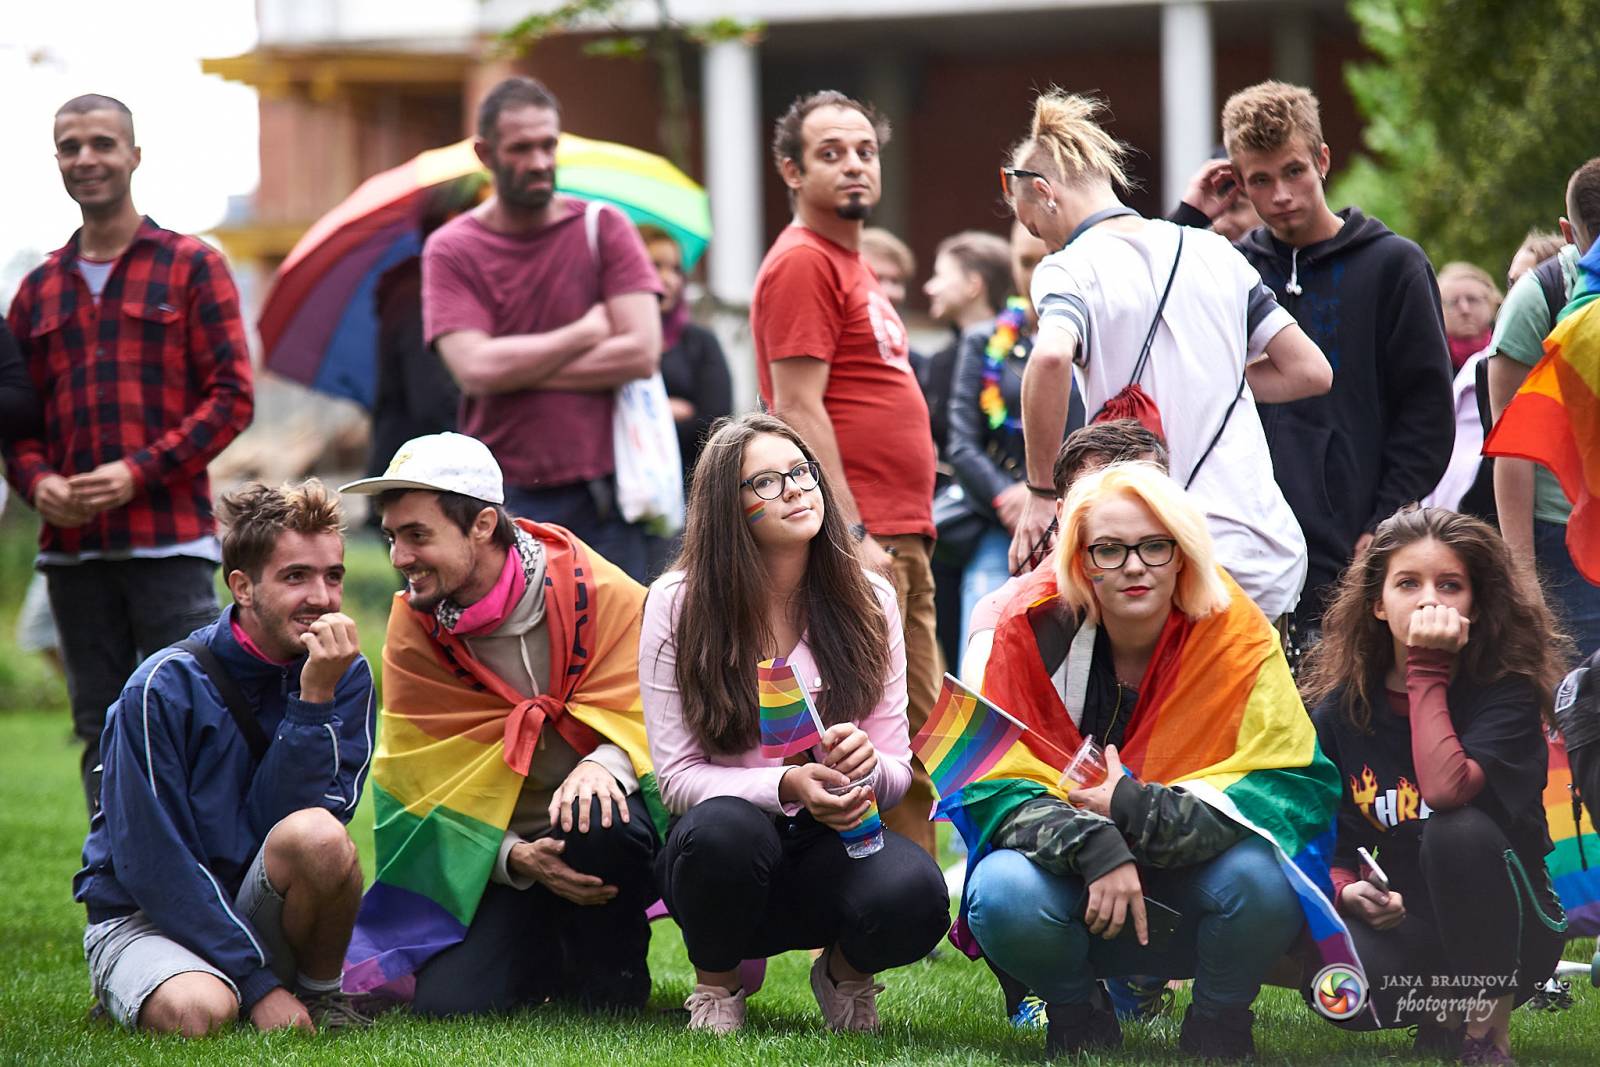 Pilsen Pride podruhé: Duhový průvod prošel Plzní, narušili ho demonstranti